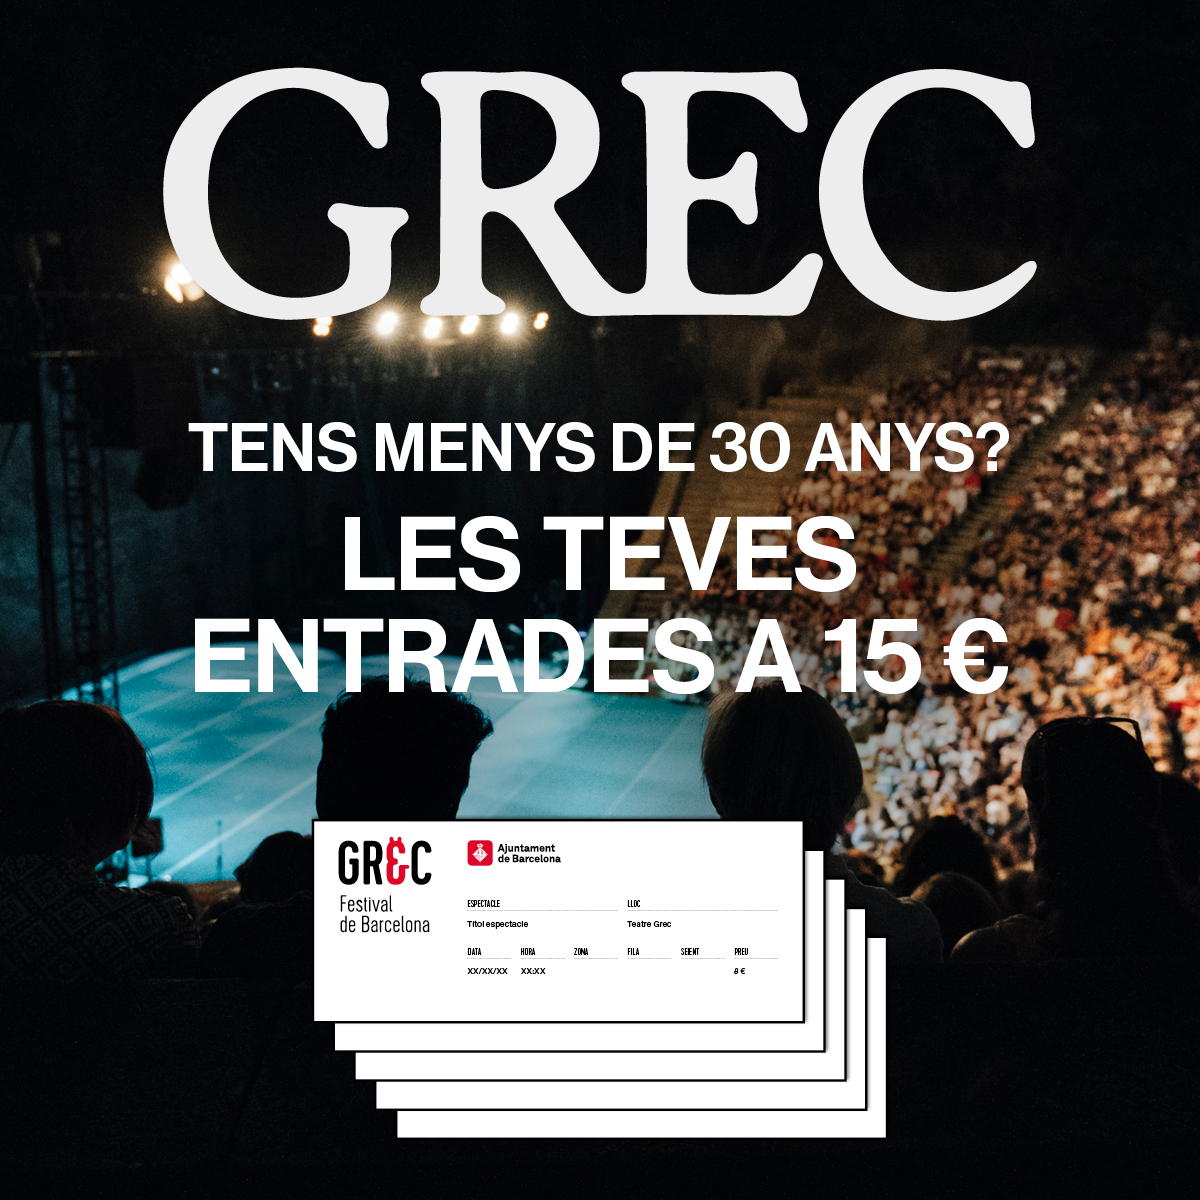 📣 Ep! Tens menys de 30 anys? Doncs això t'interessa! 👇

😱 Gaudeix dels espectacles del #GrecFestival a només 15 €.

👏 Aprofita la 'Tarifa Jove' i viu l'experiència Grec amb nosaltres.

barcelona.cat/grec/ca/descom…